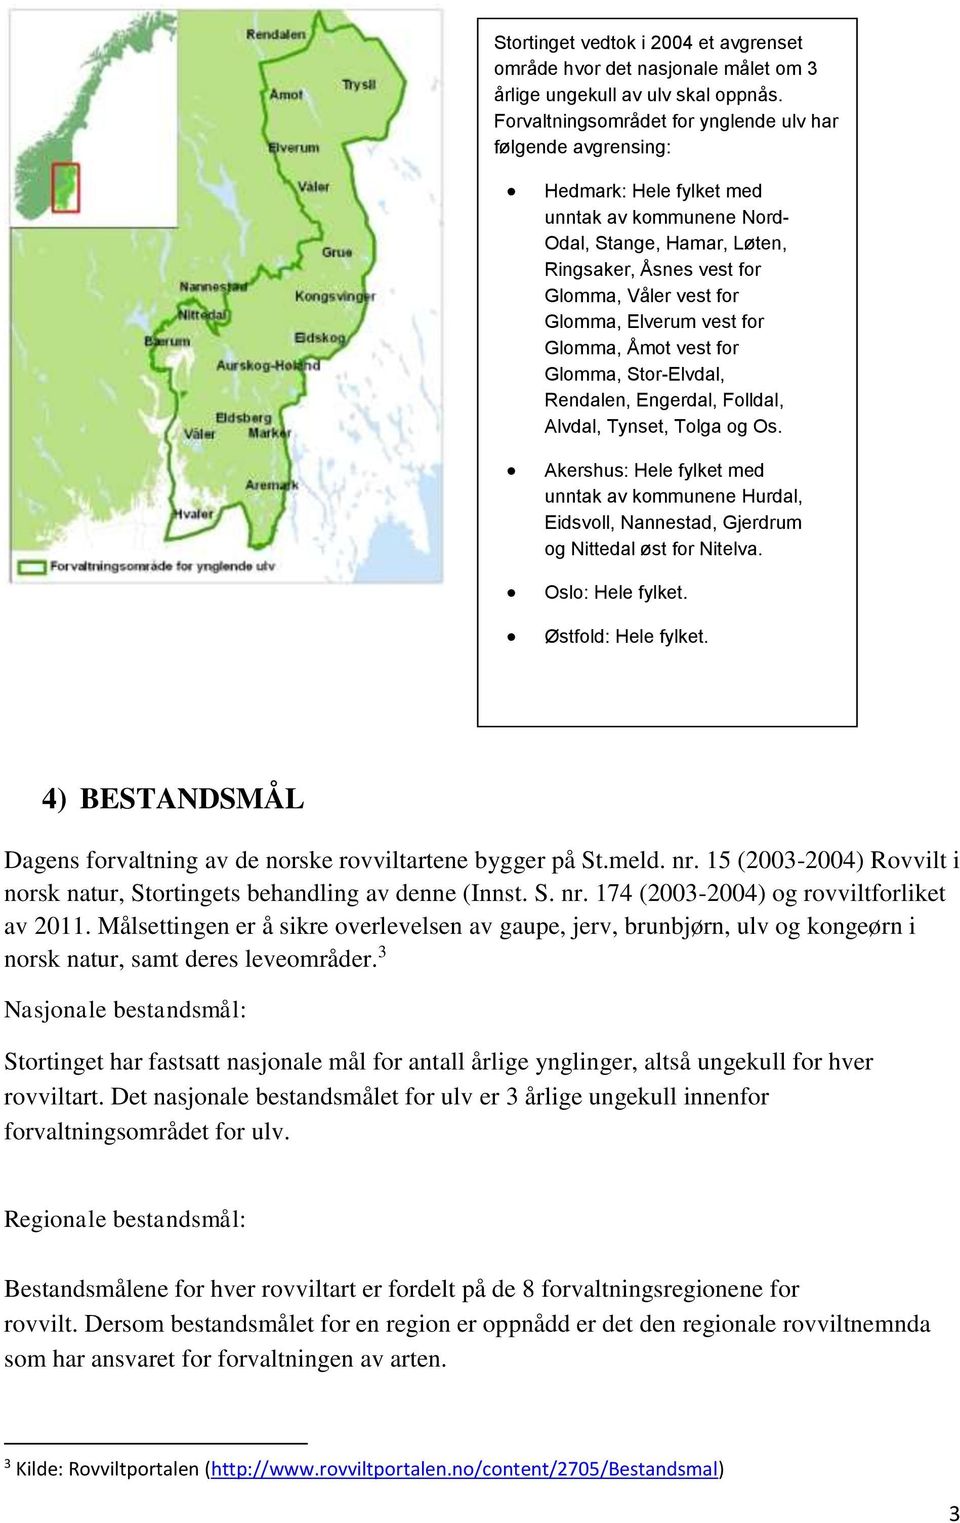 Elverum vest for Glomma, Åmot vest for Glomma, Stor-Elvdal, Rendalen, Engerdal, Folldal, Alvdal, Tynset, Tolga og Os.